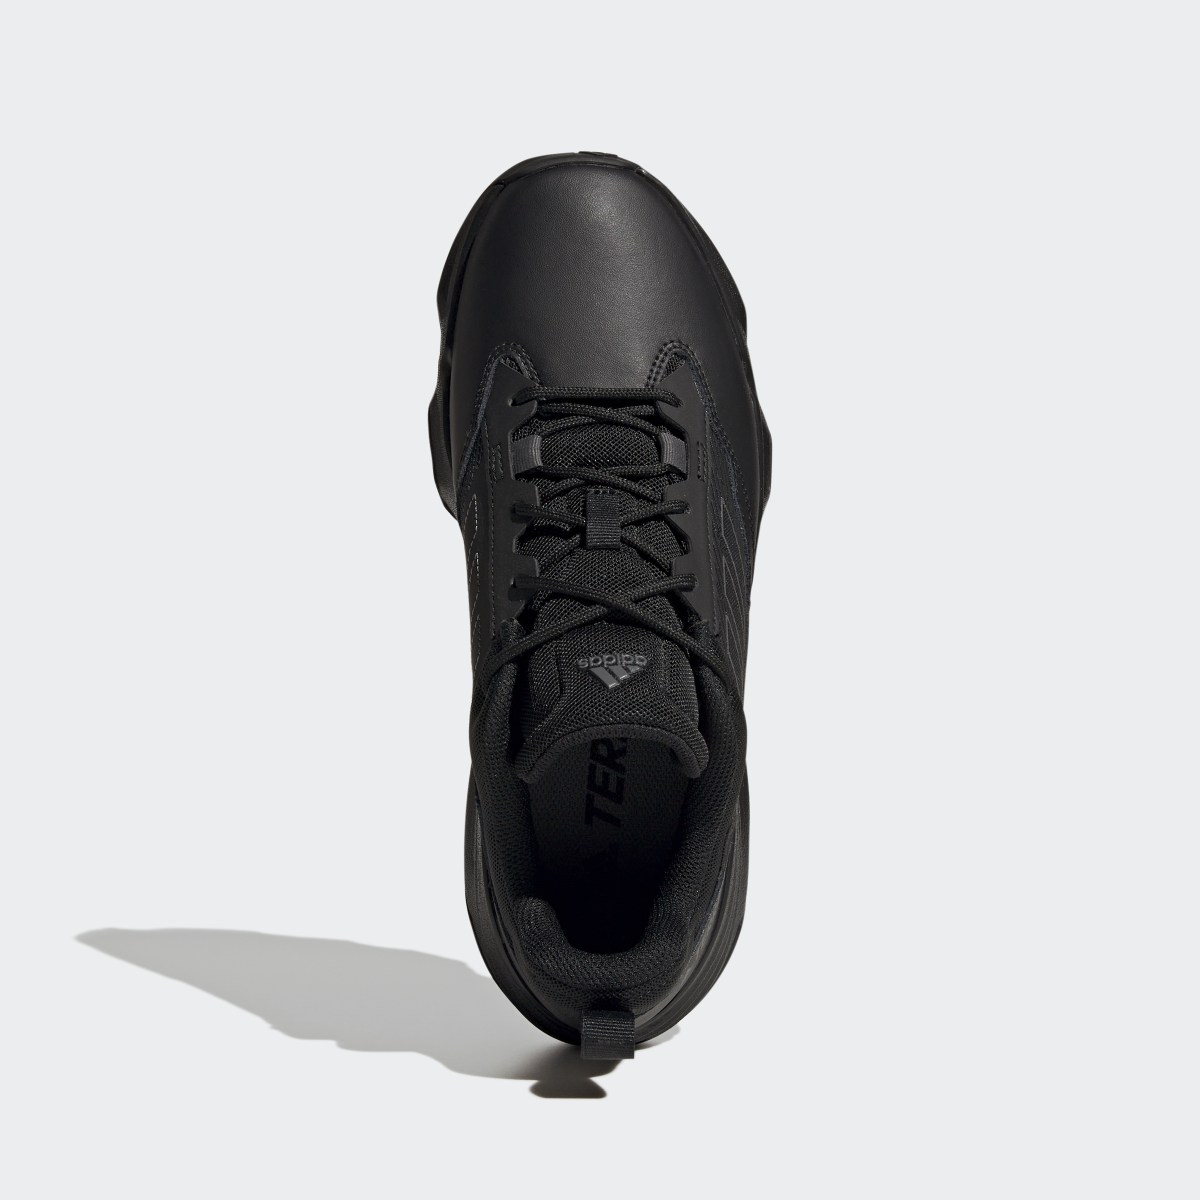 Adidas Unity Leather Hiking Shoes. 5